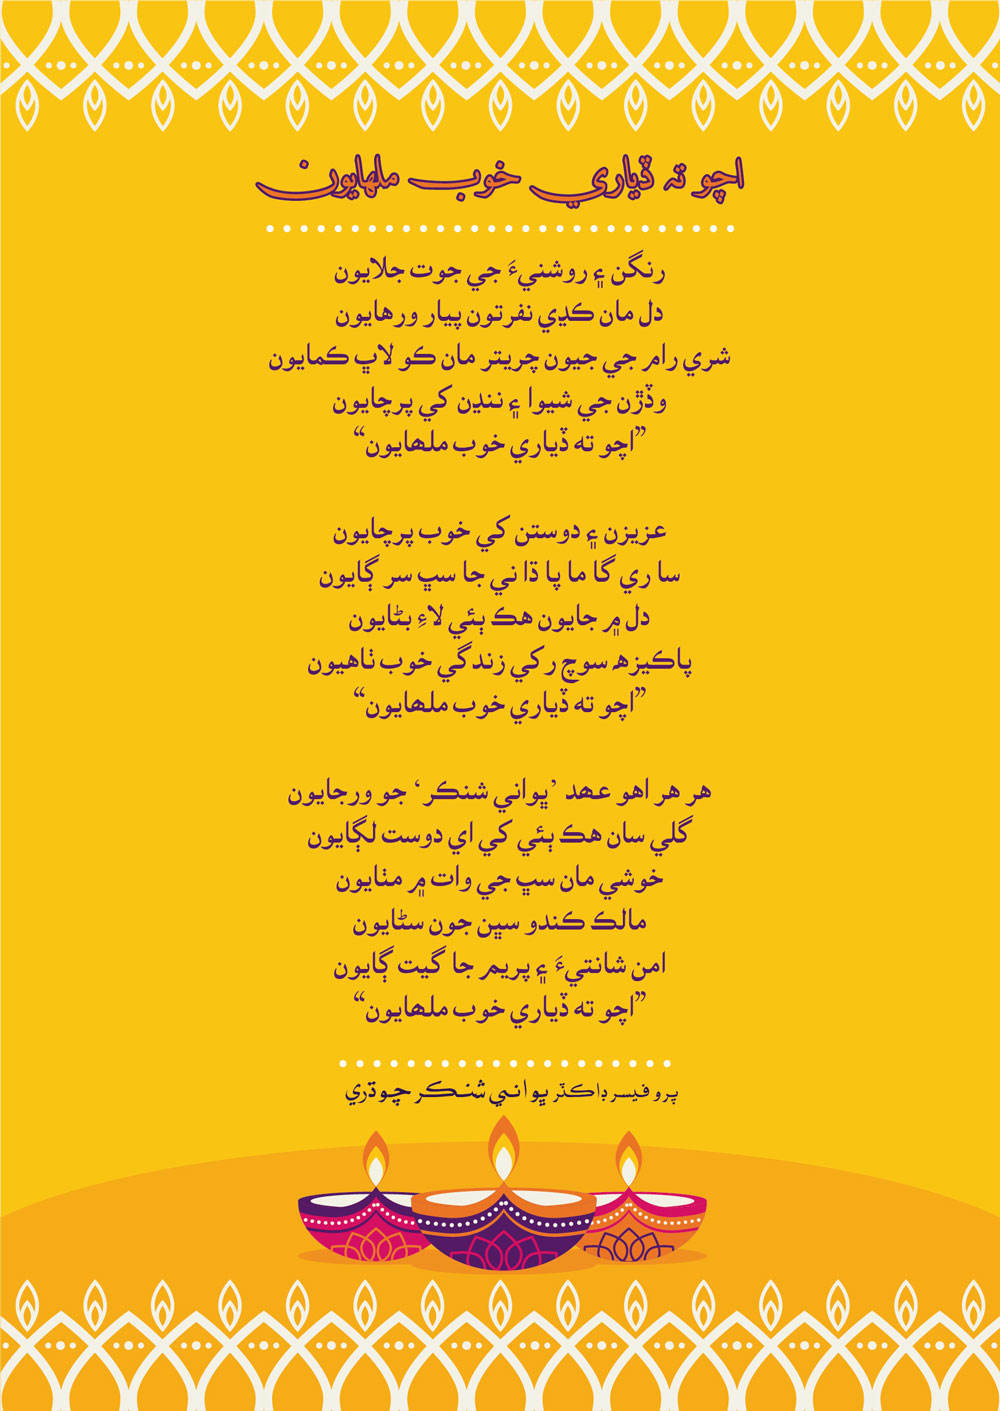 Diwali Poetry